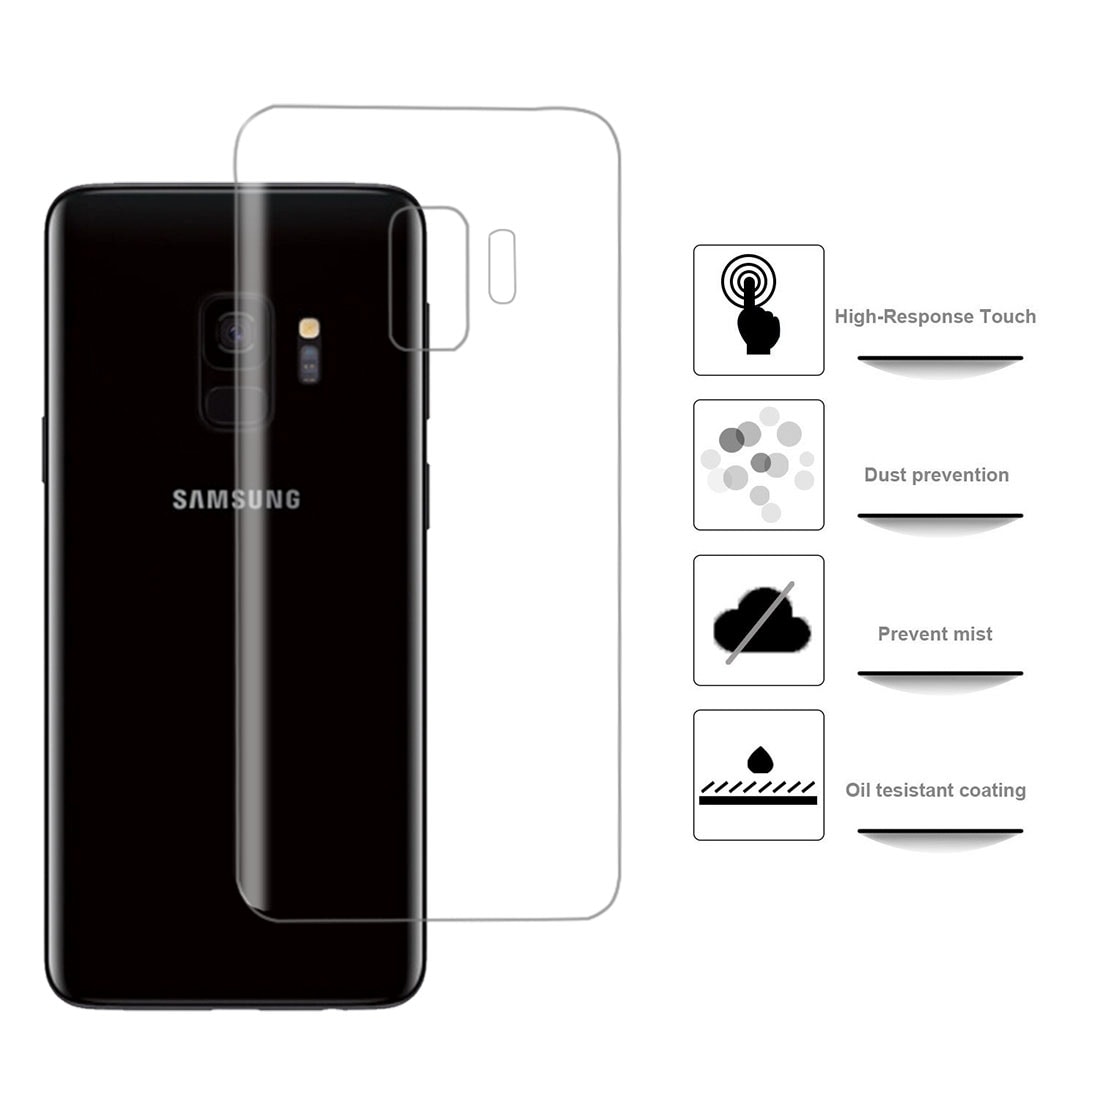 Skärmskydd / skydd för baksida på Samsung Galaxy S9